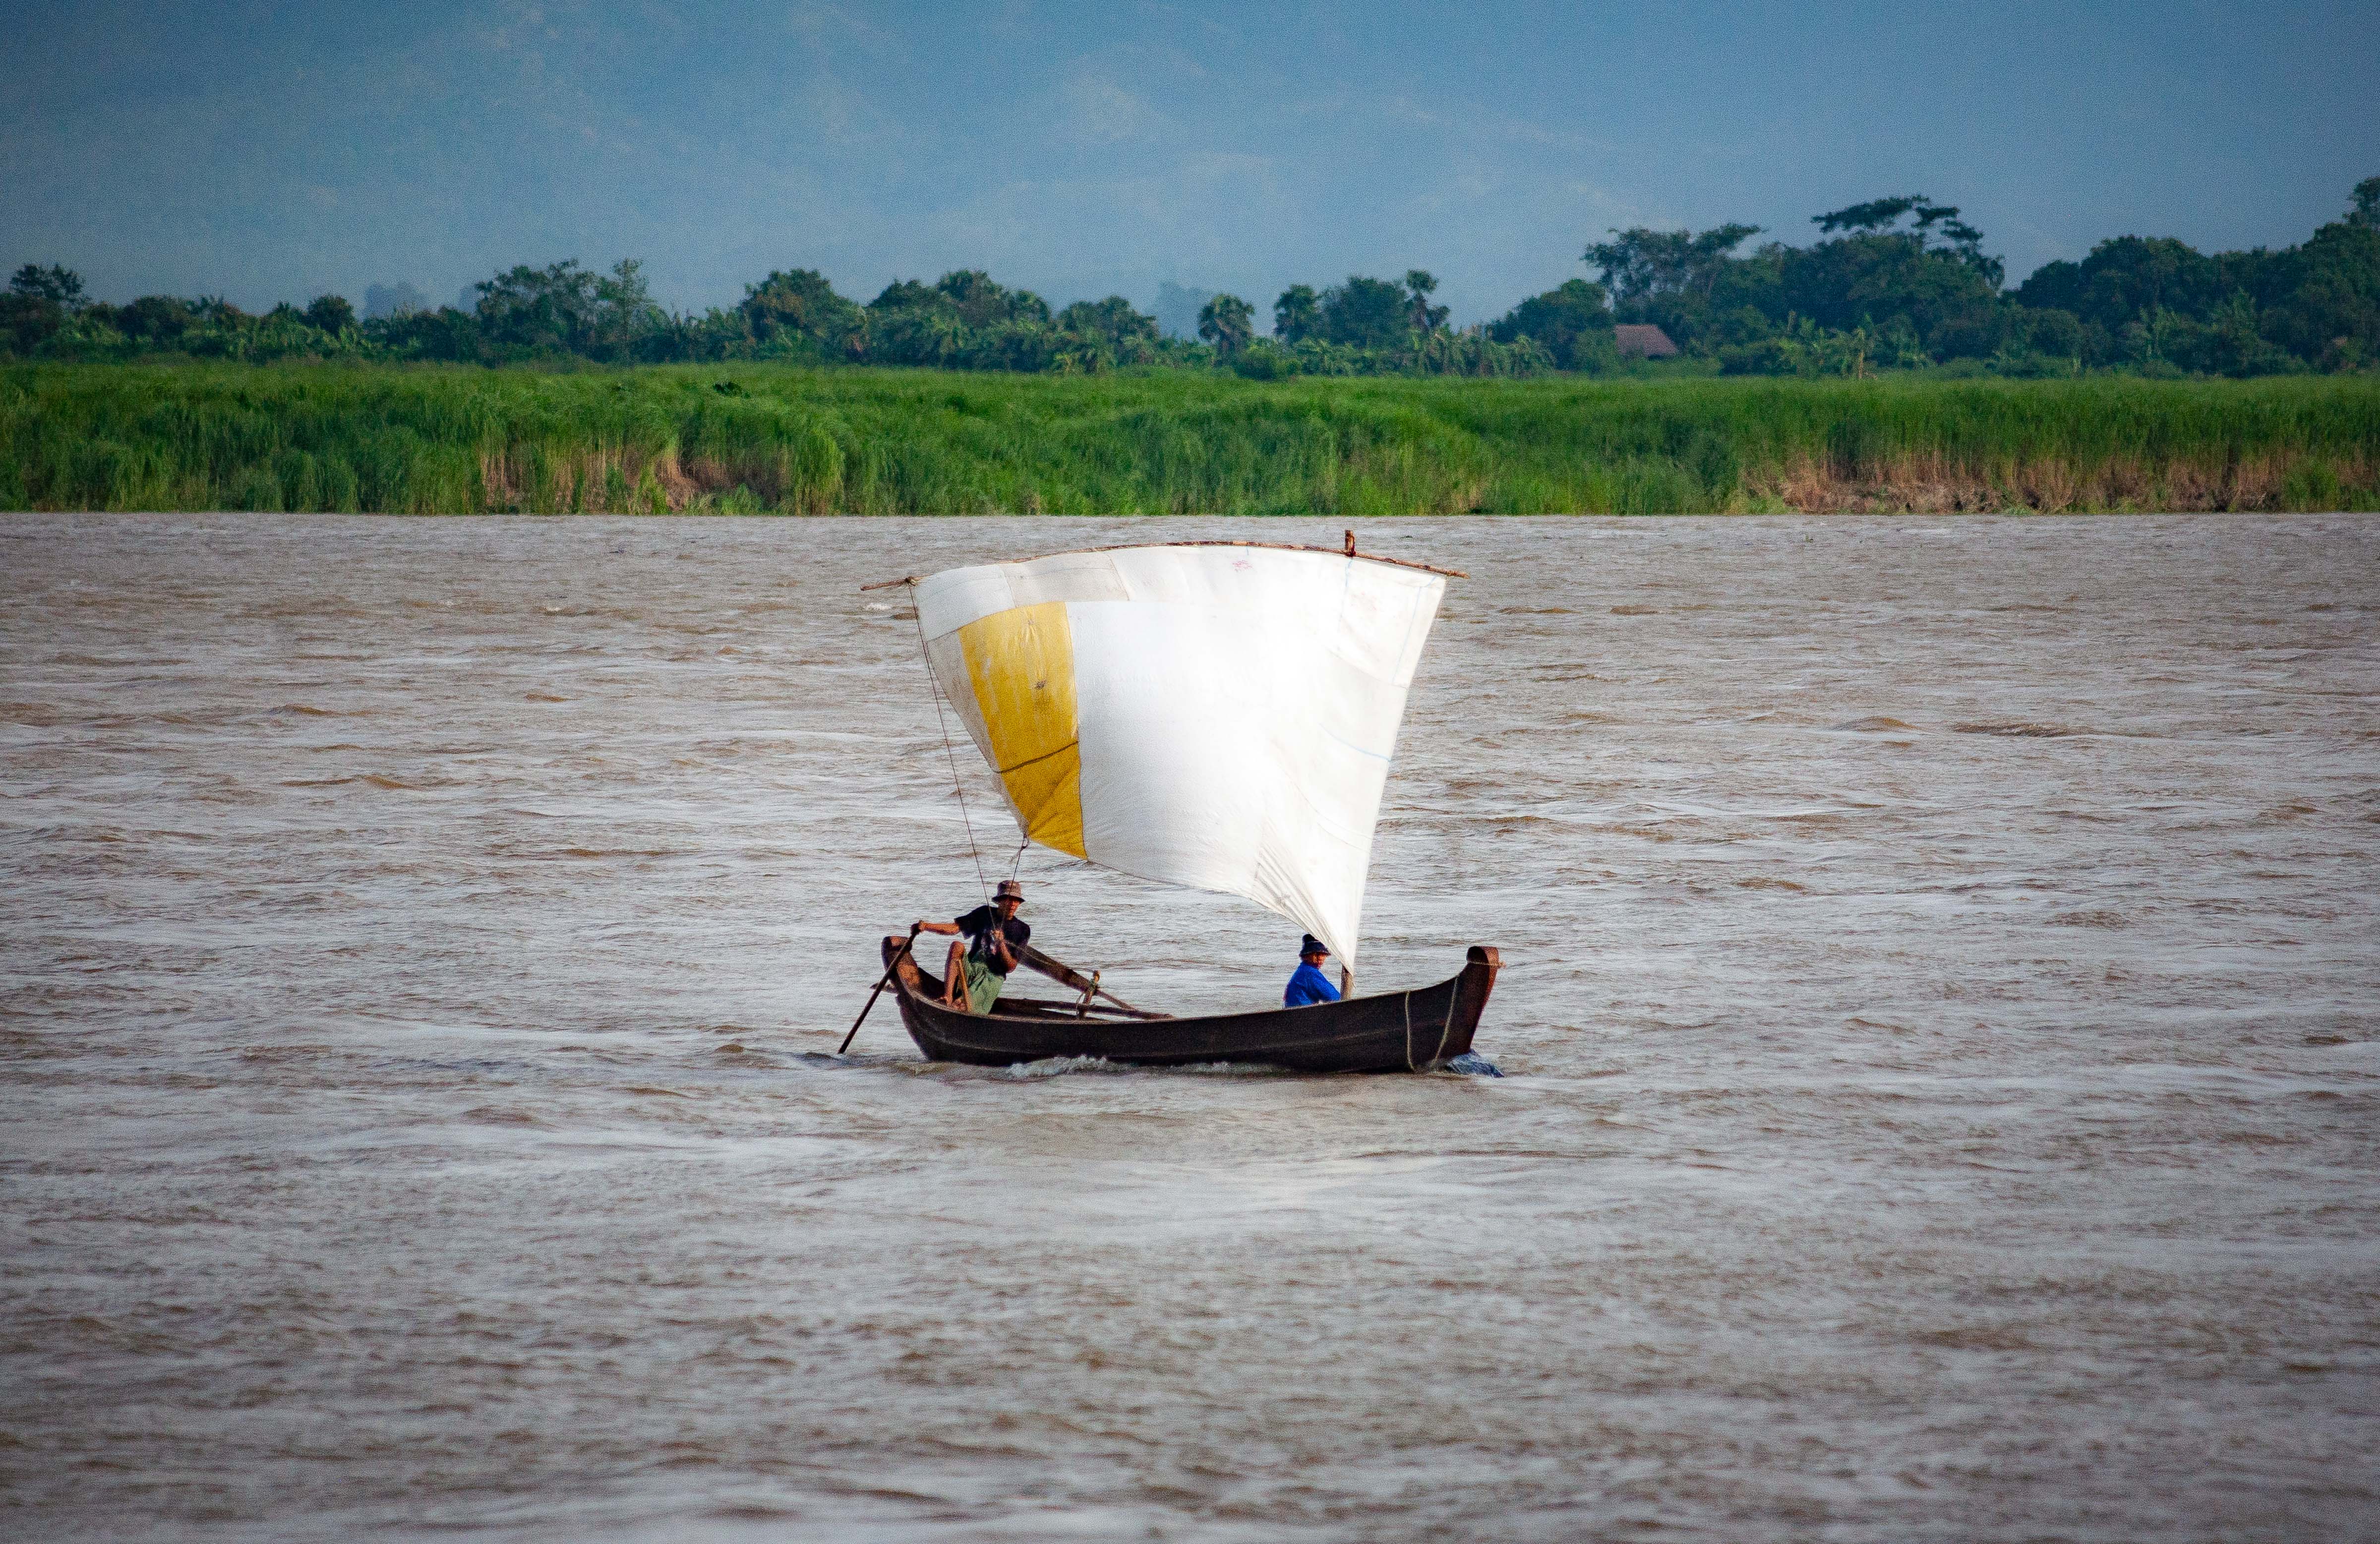 Myanmar, Unknown Prov, Boat River, 2009, IMG 3873